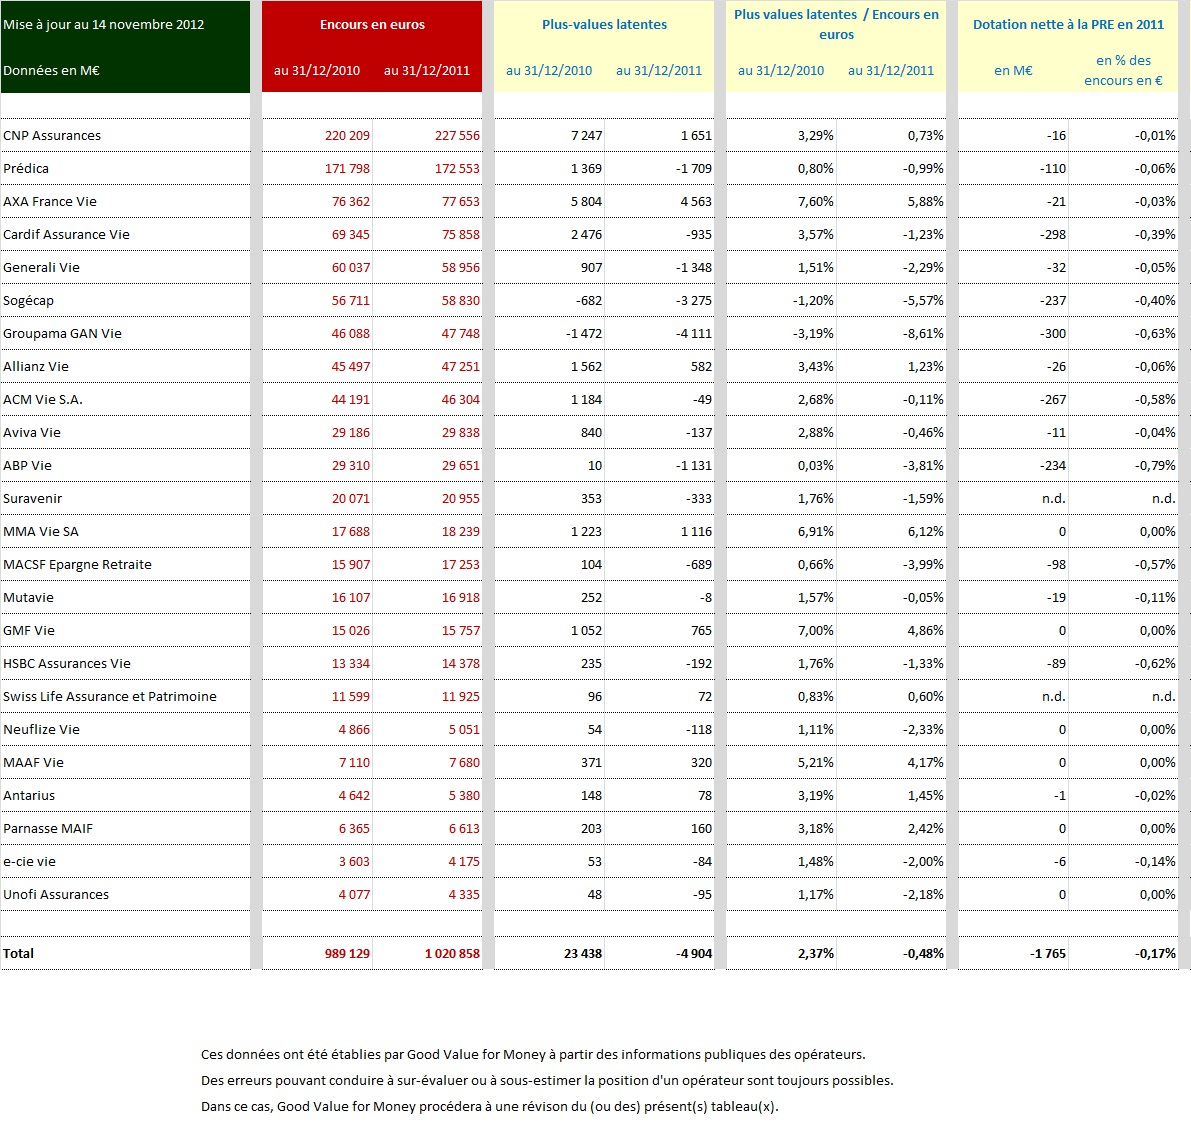 Plus ou Moins-values latentes et dotation à la PRE d'une vingtaine de sociétés fin 2011